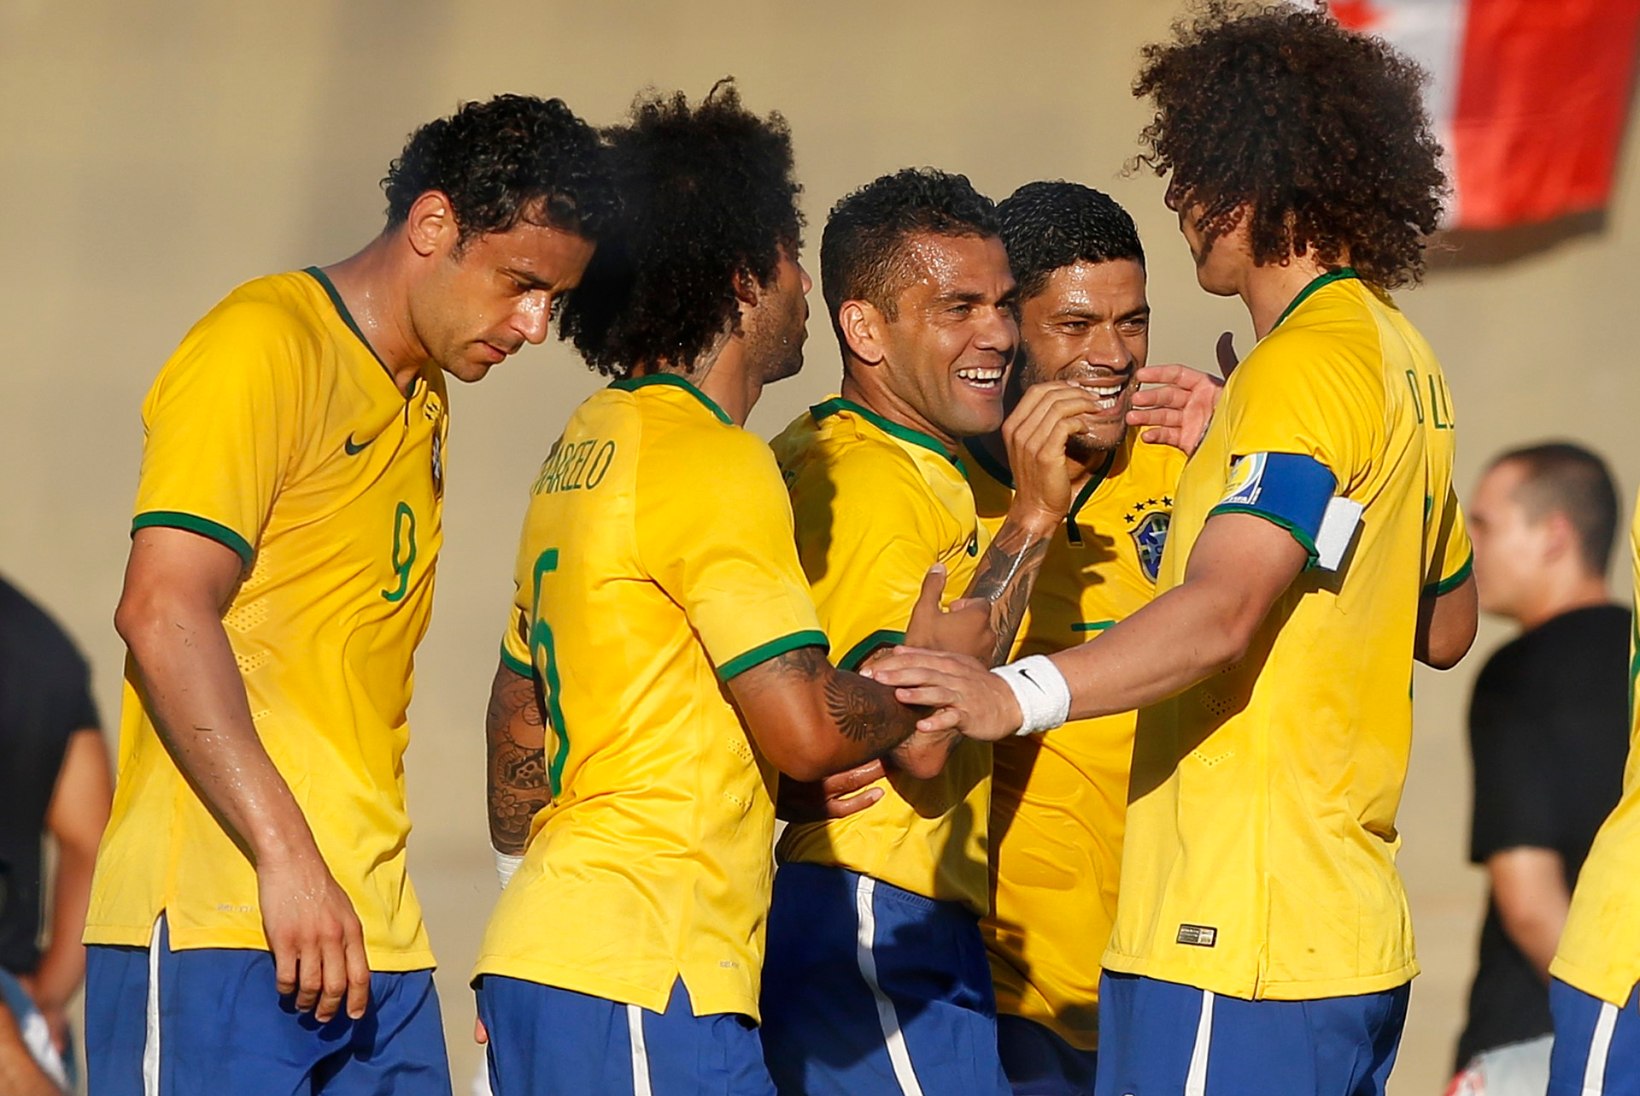 VIDEOŠÕU! Brasiilia alistas Panama 4:0, üks värav ilusam kui teine!